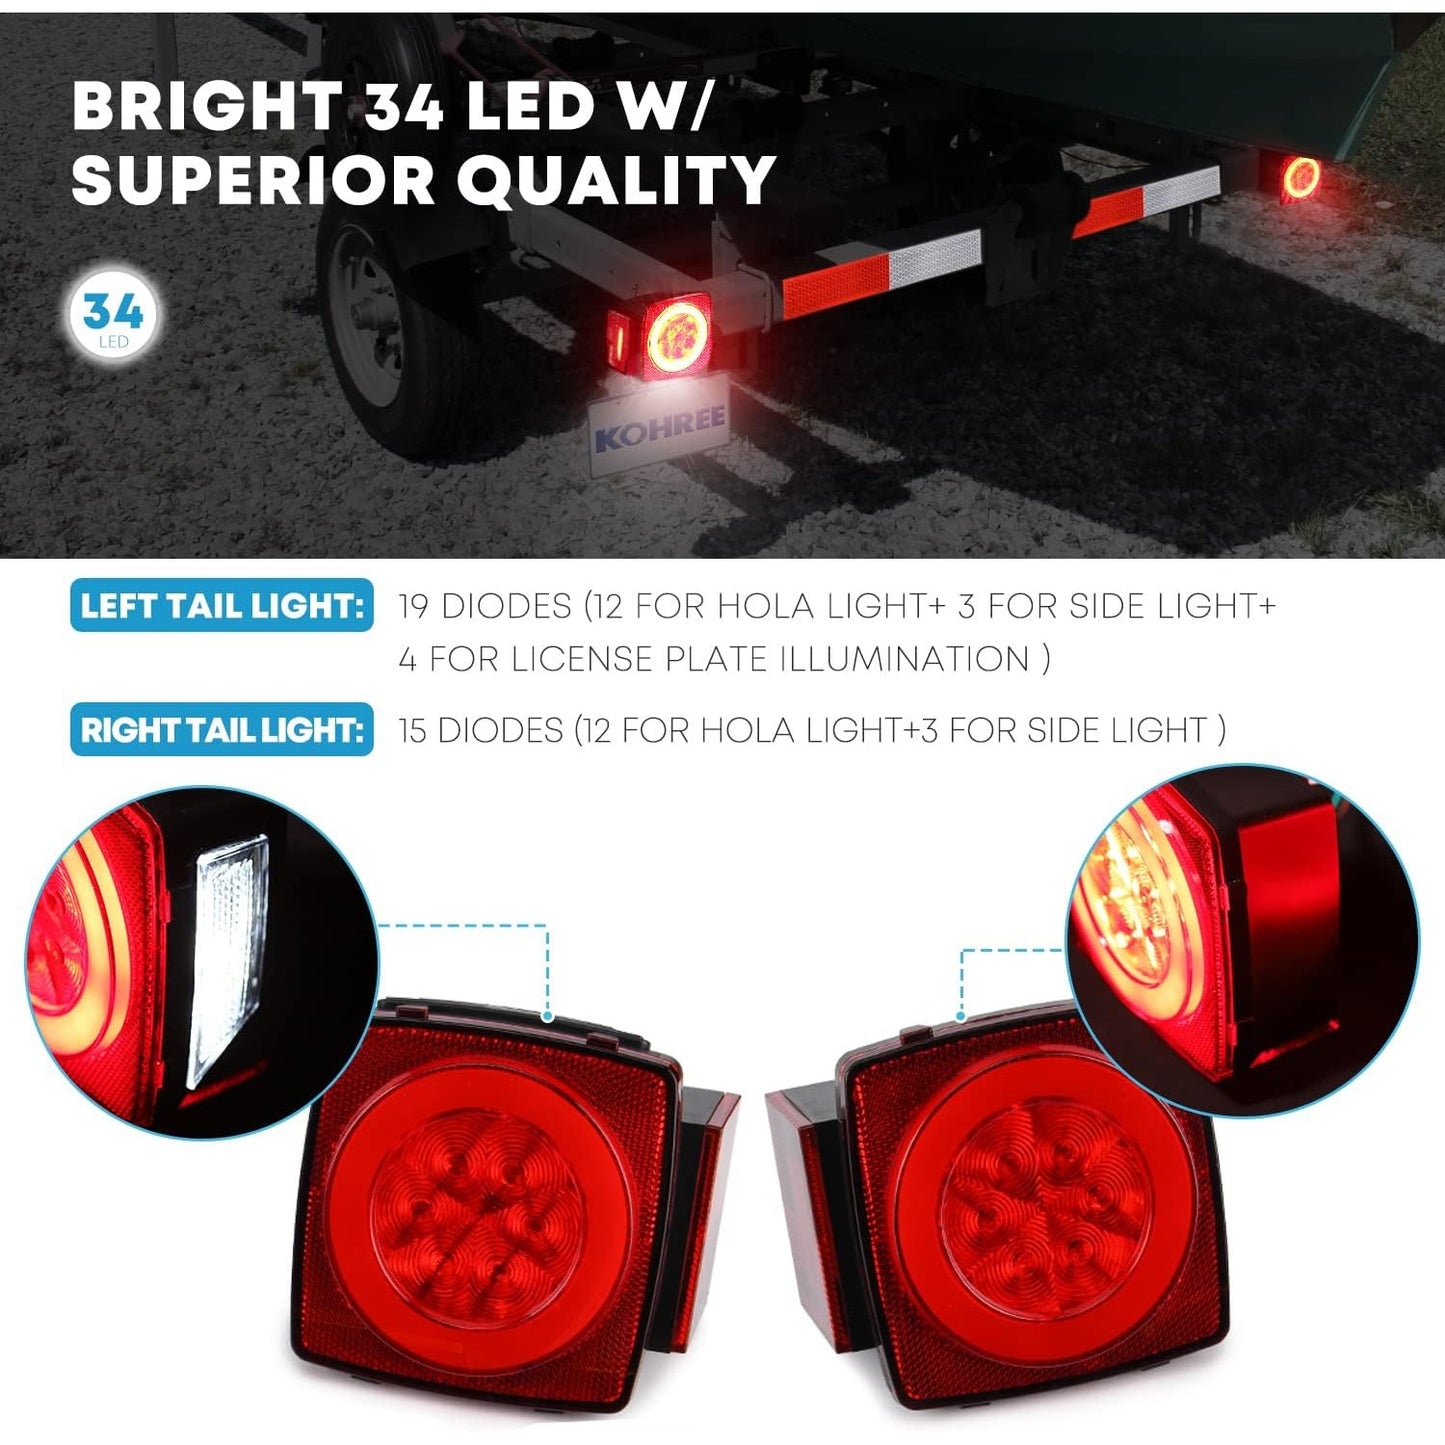 Hemdre Super Bright Led Trailer Light Kit